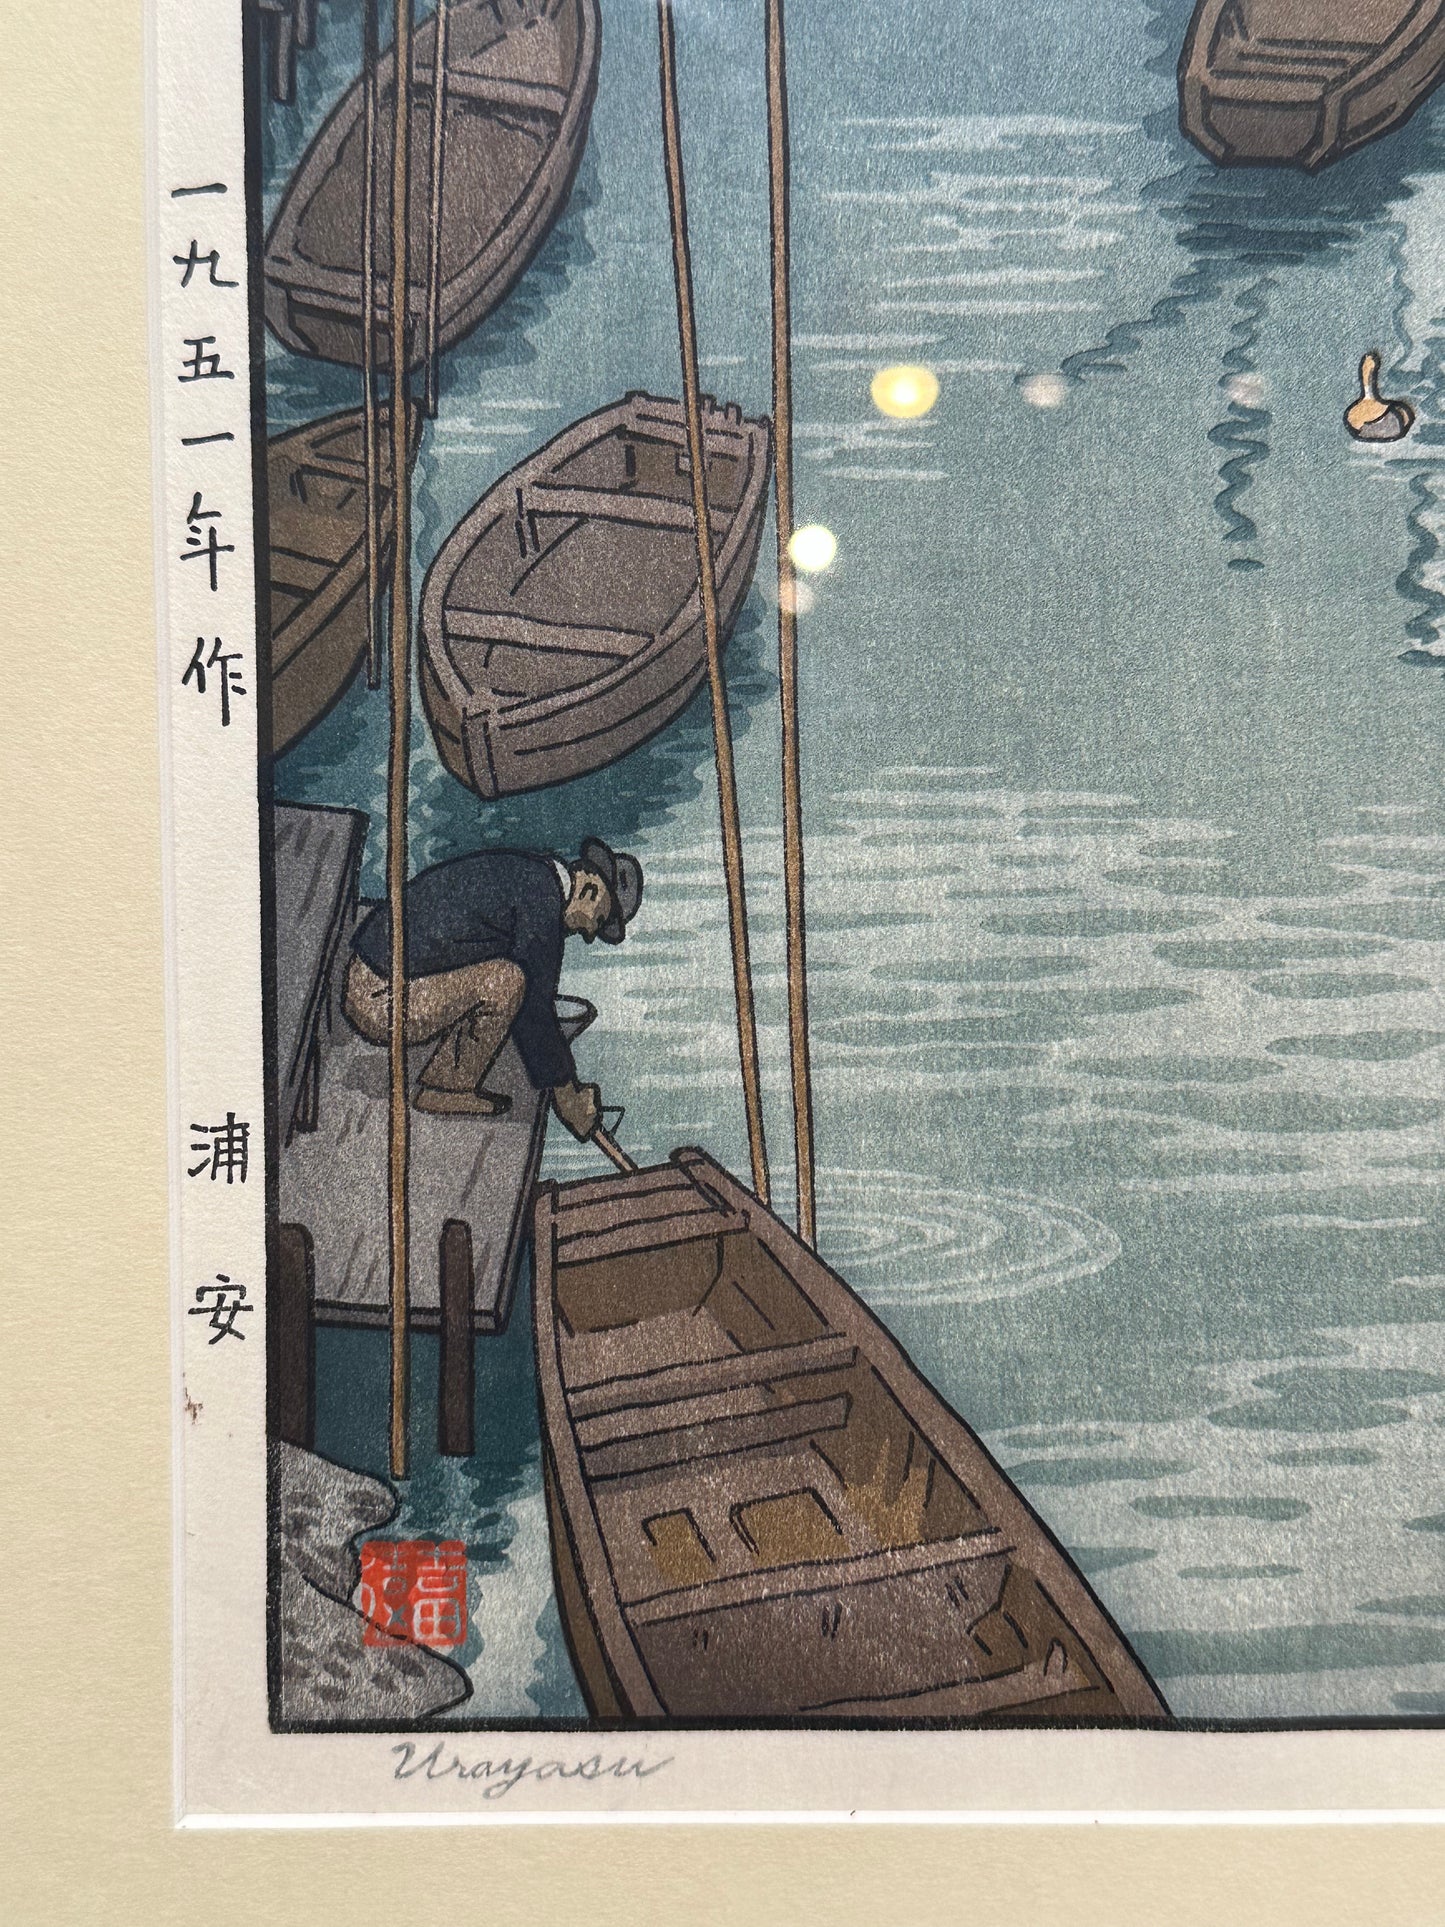 Toshi Yoshida Woodblock Print Urayasu 1951 in Frame